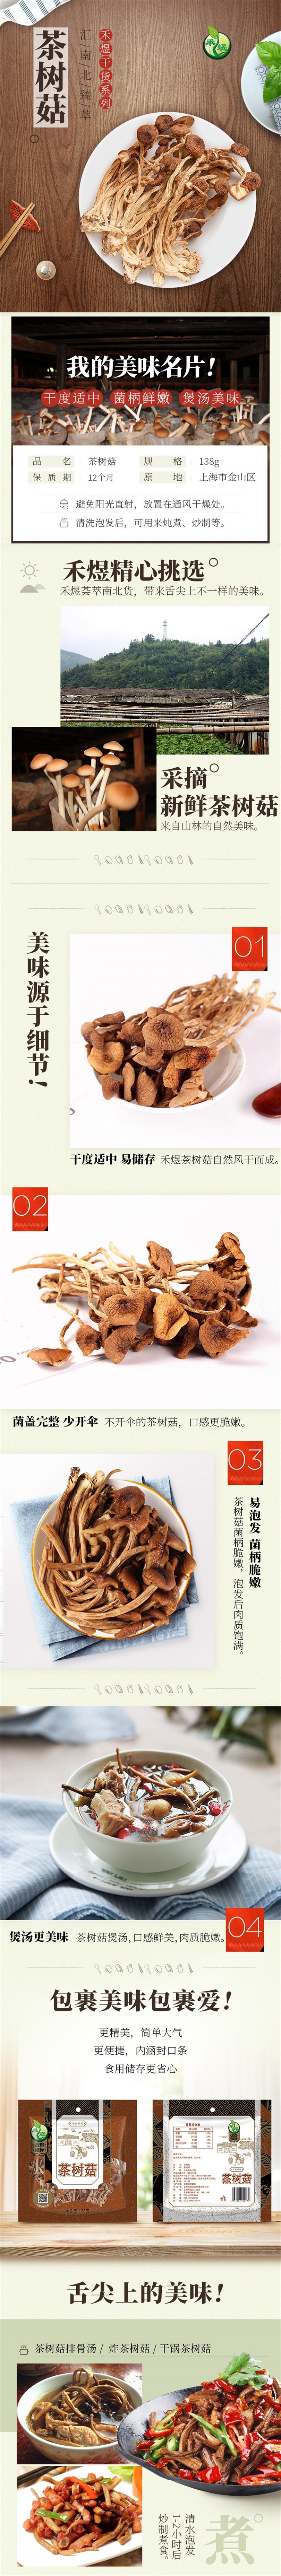 【中国直邮】禾煜 茶树菇 138g